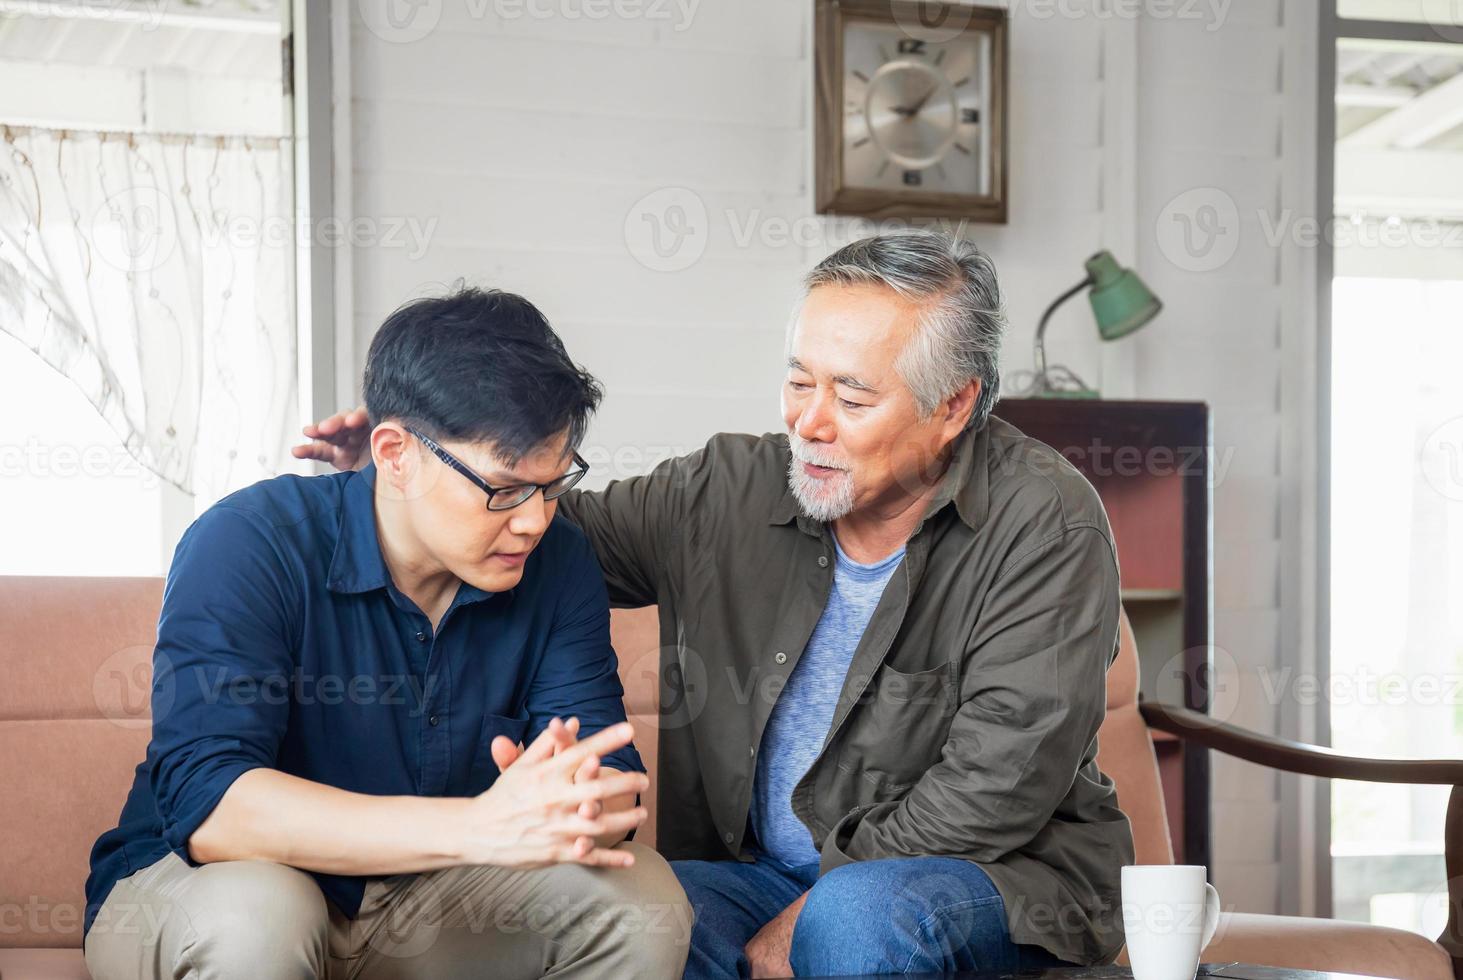 pai asiático sênior dá conselhos filho adulto na sala de estar, conceitos de família de felicidade foto